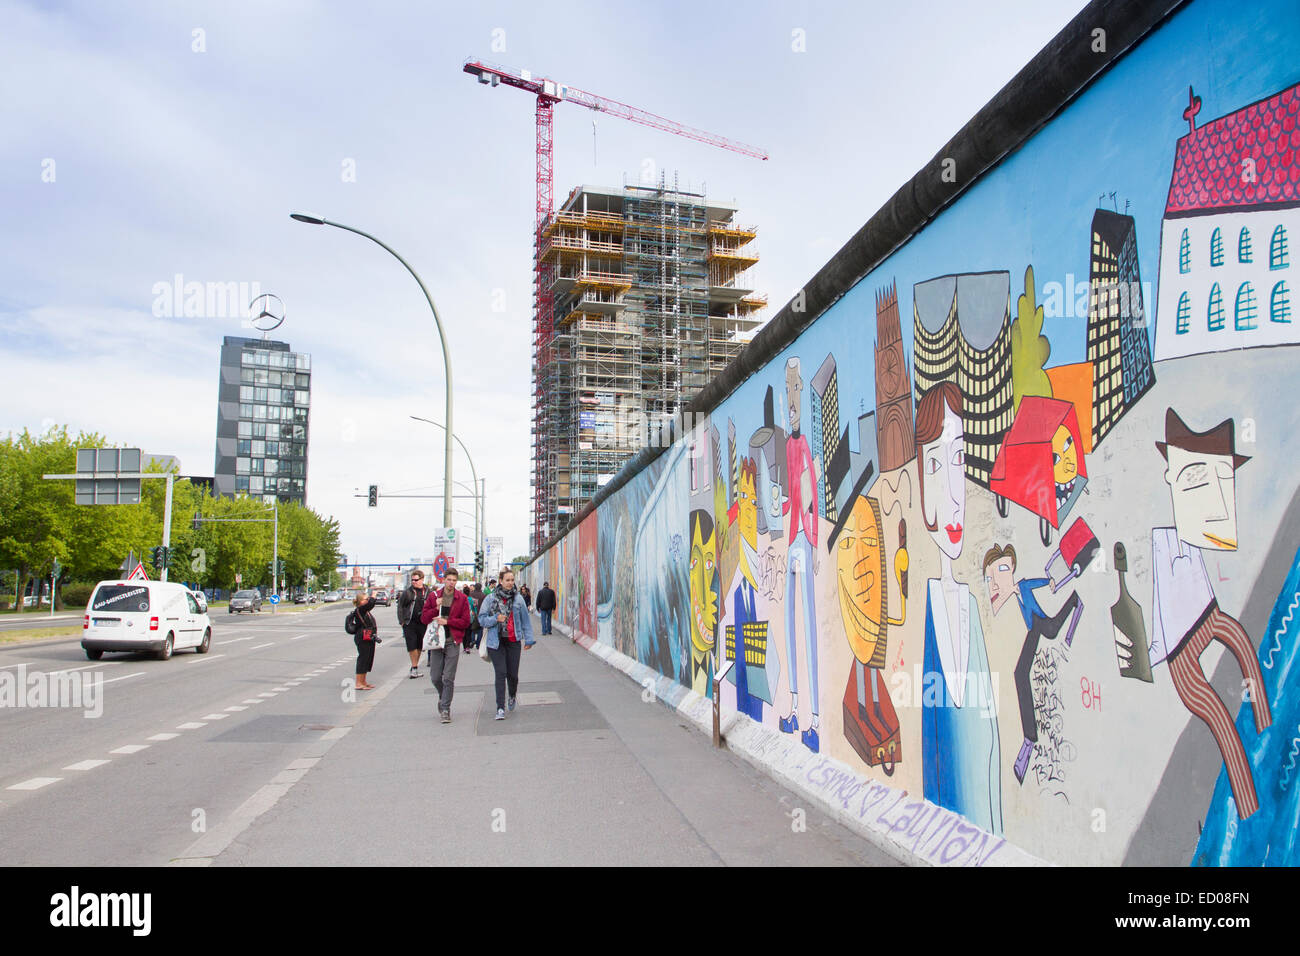 Berlin wall, Germany Stock Photo